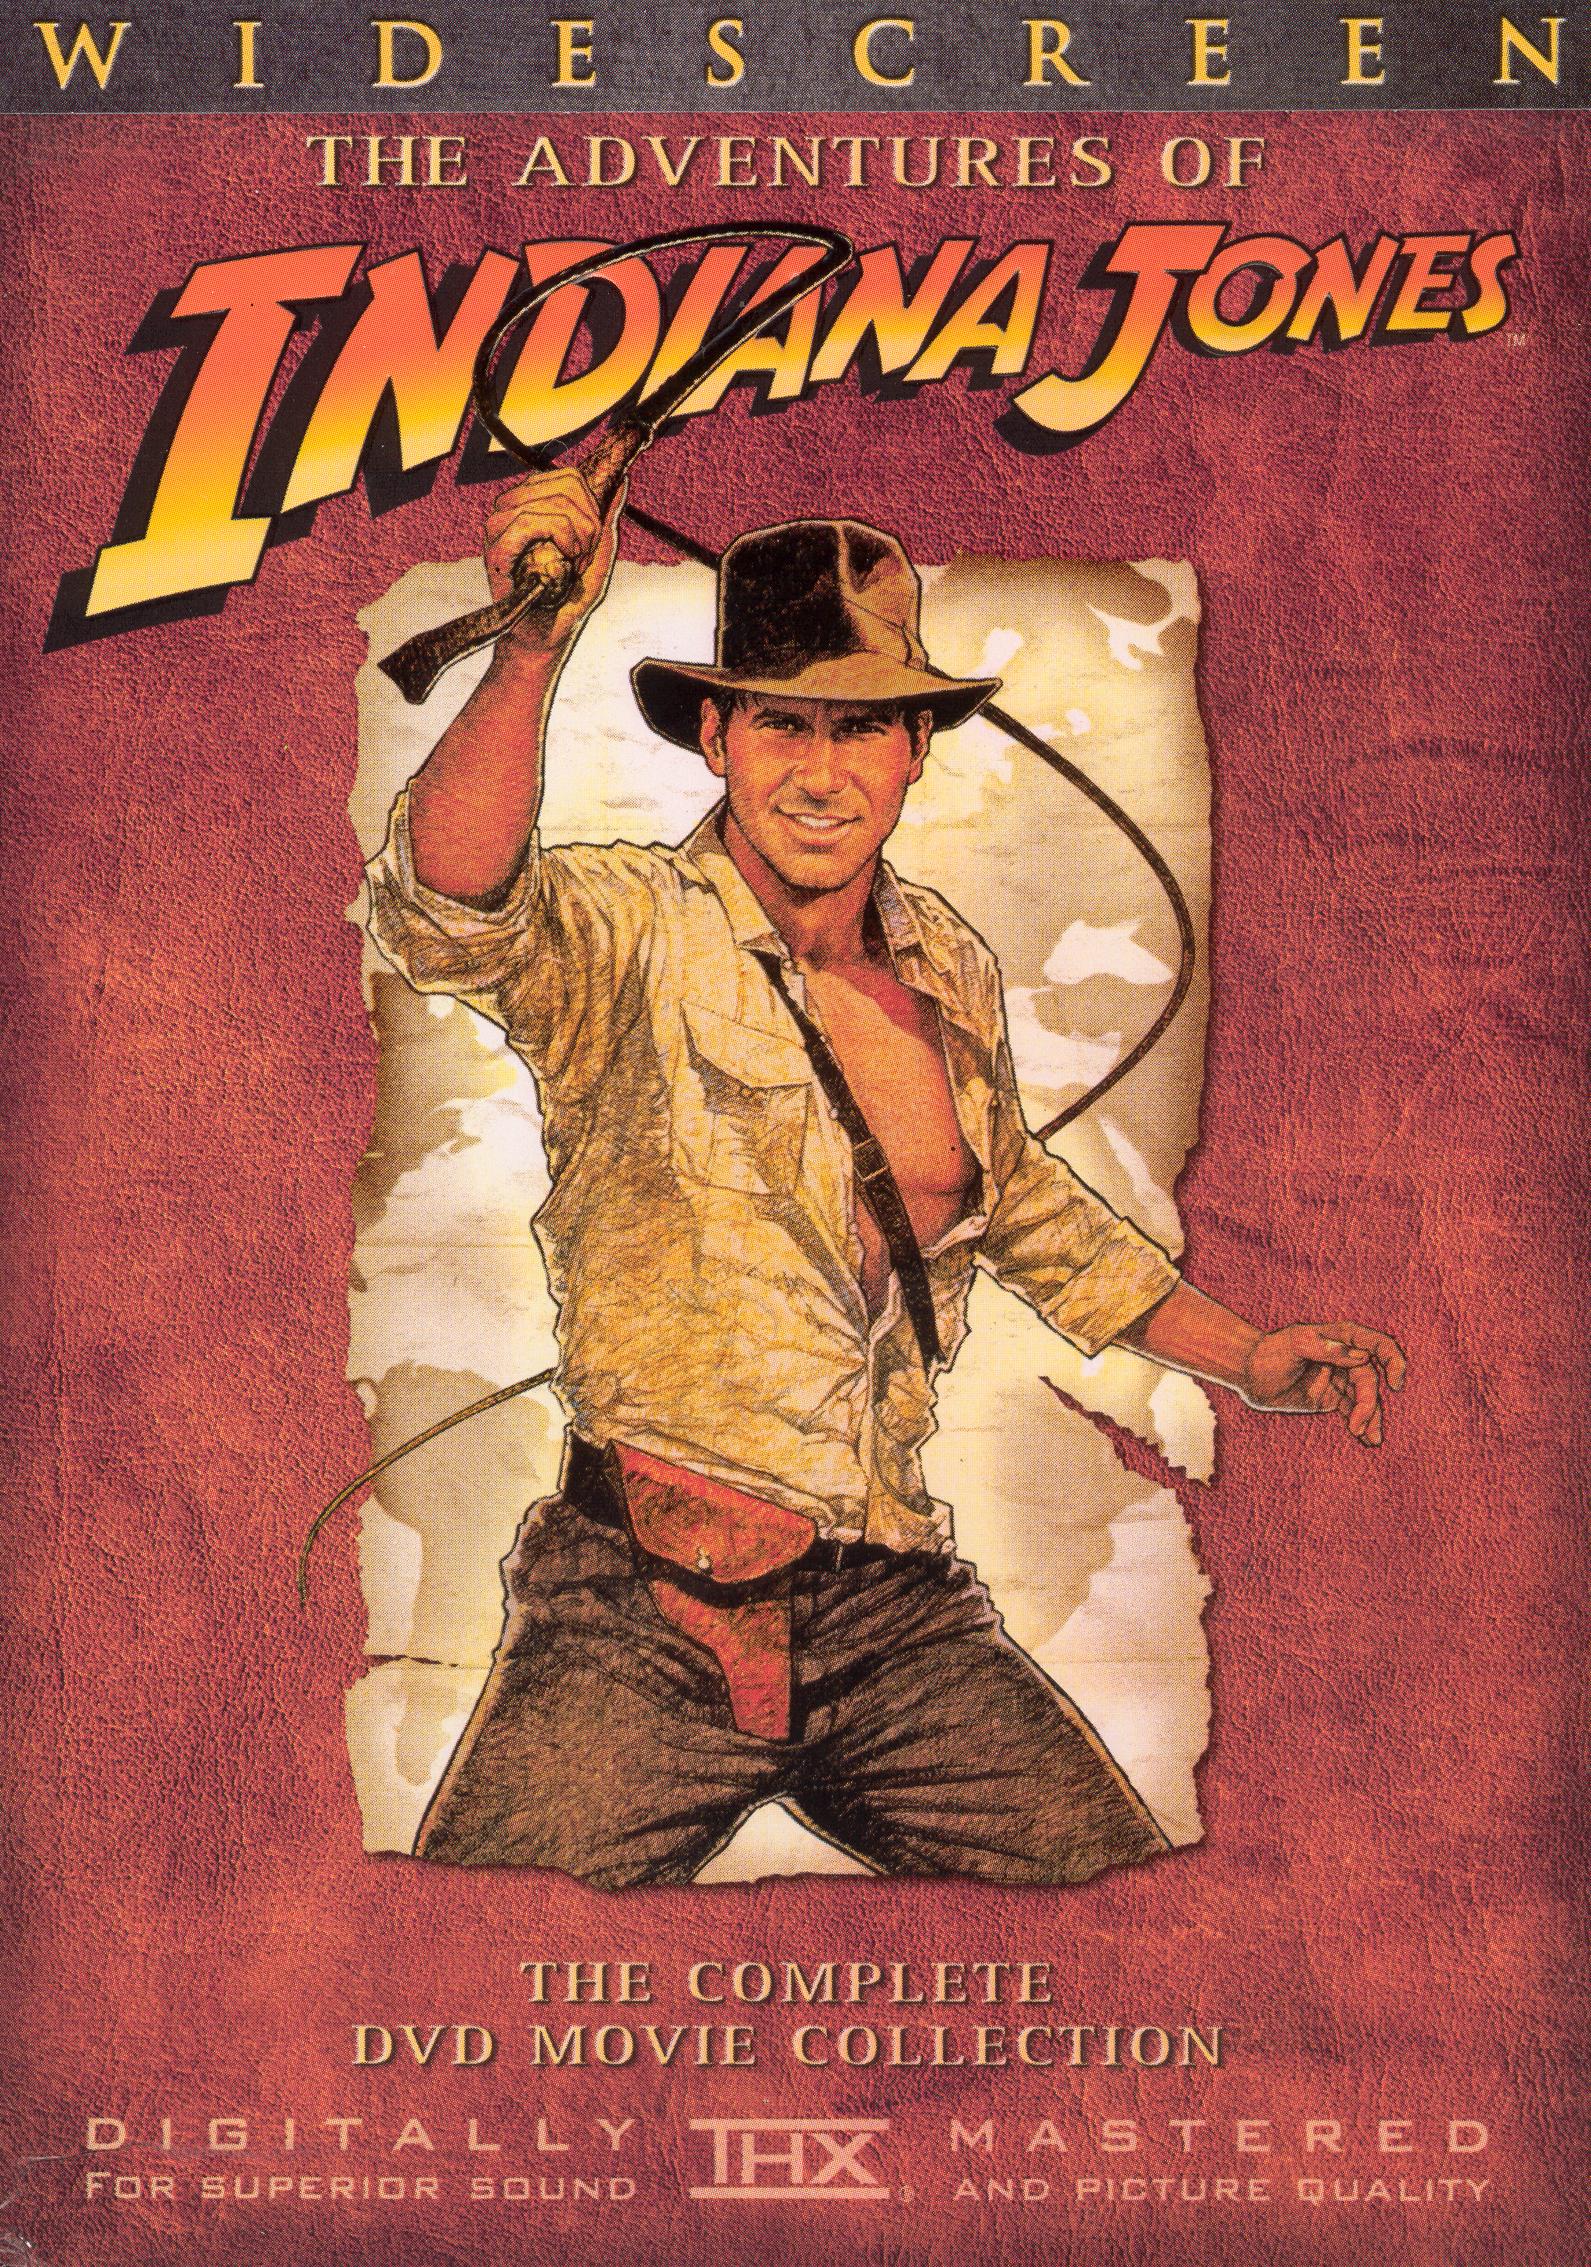 Best Buy The Adventures of Indiana Jones The Complete DVD Movie